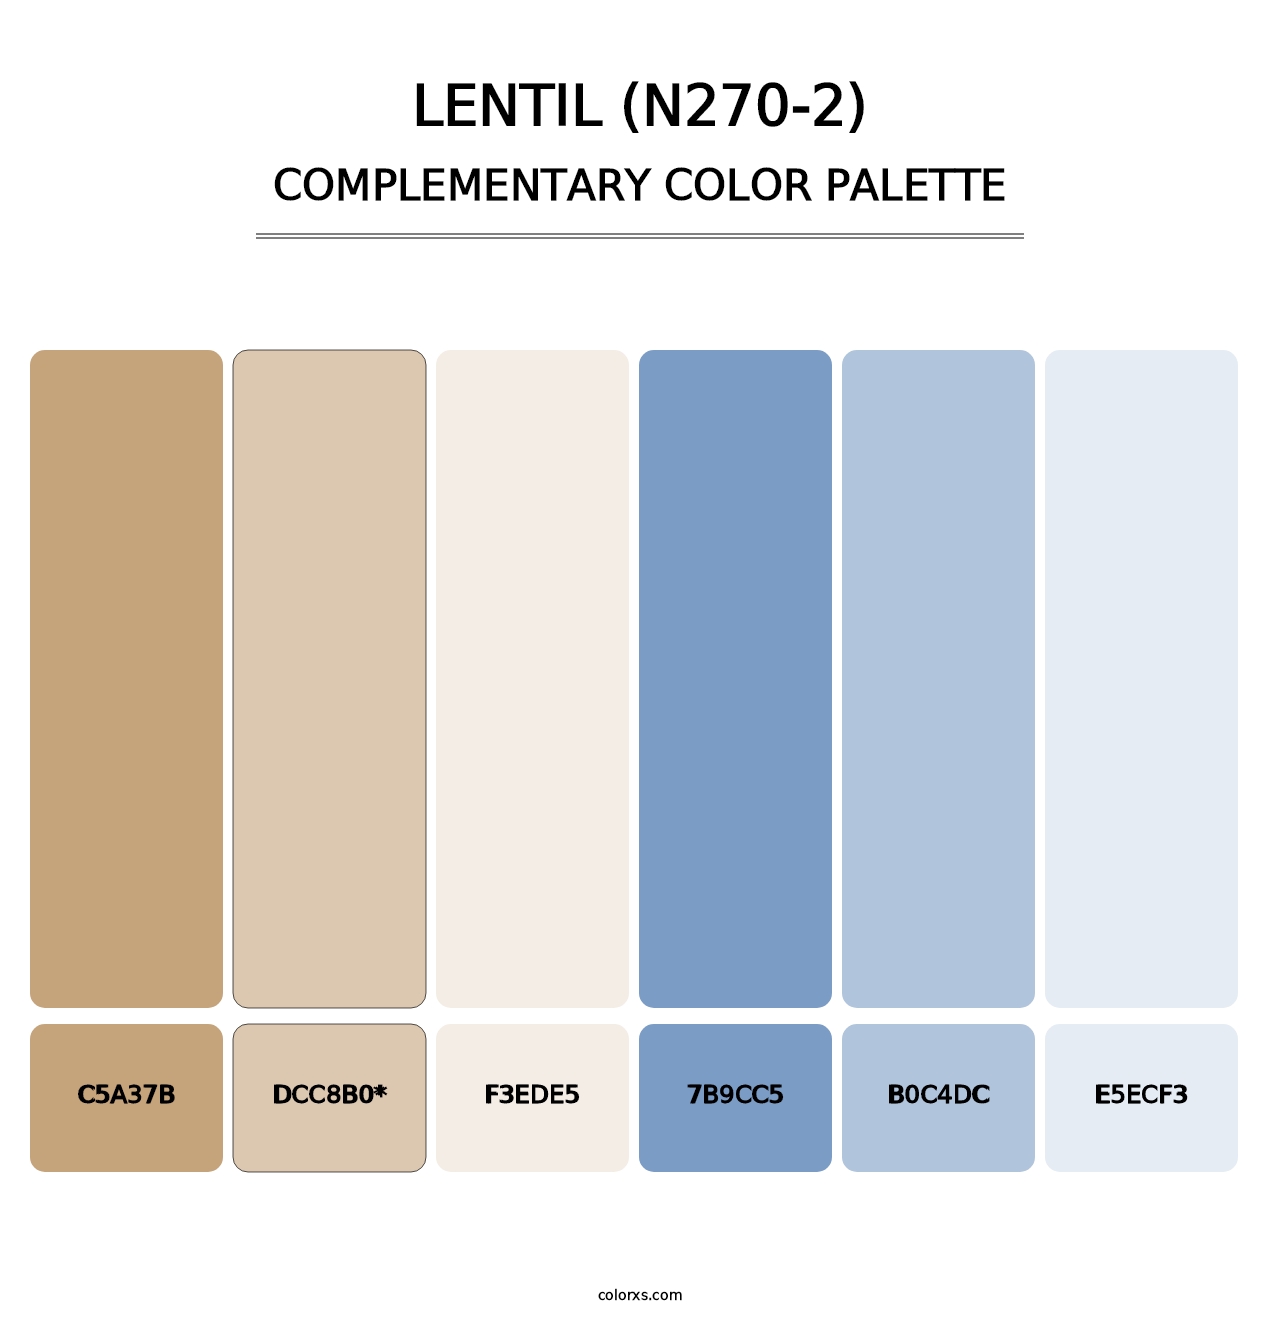 Lentil (N270-2) - Complementary Color Palette